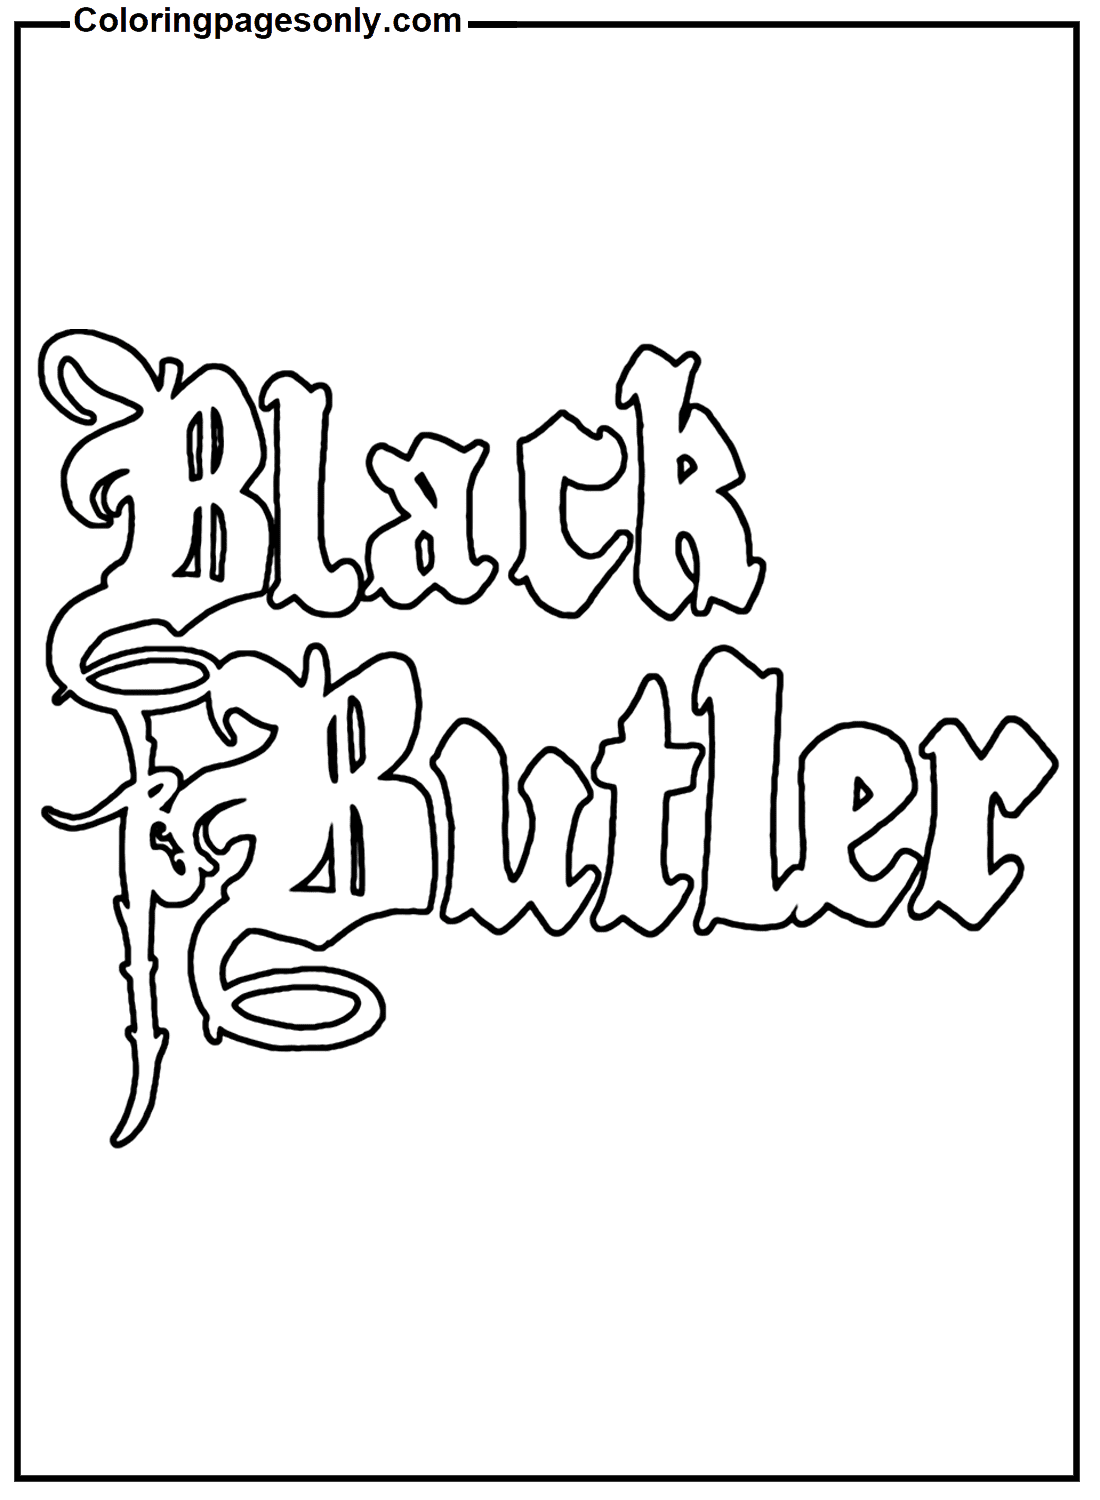 Logo Black Butler de Black Butler